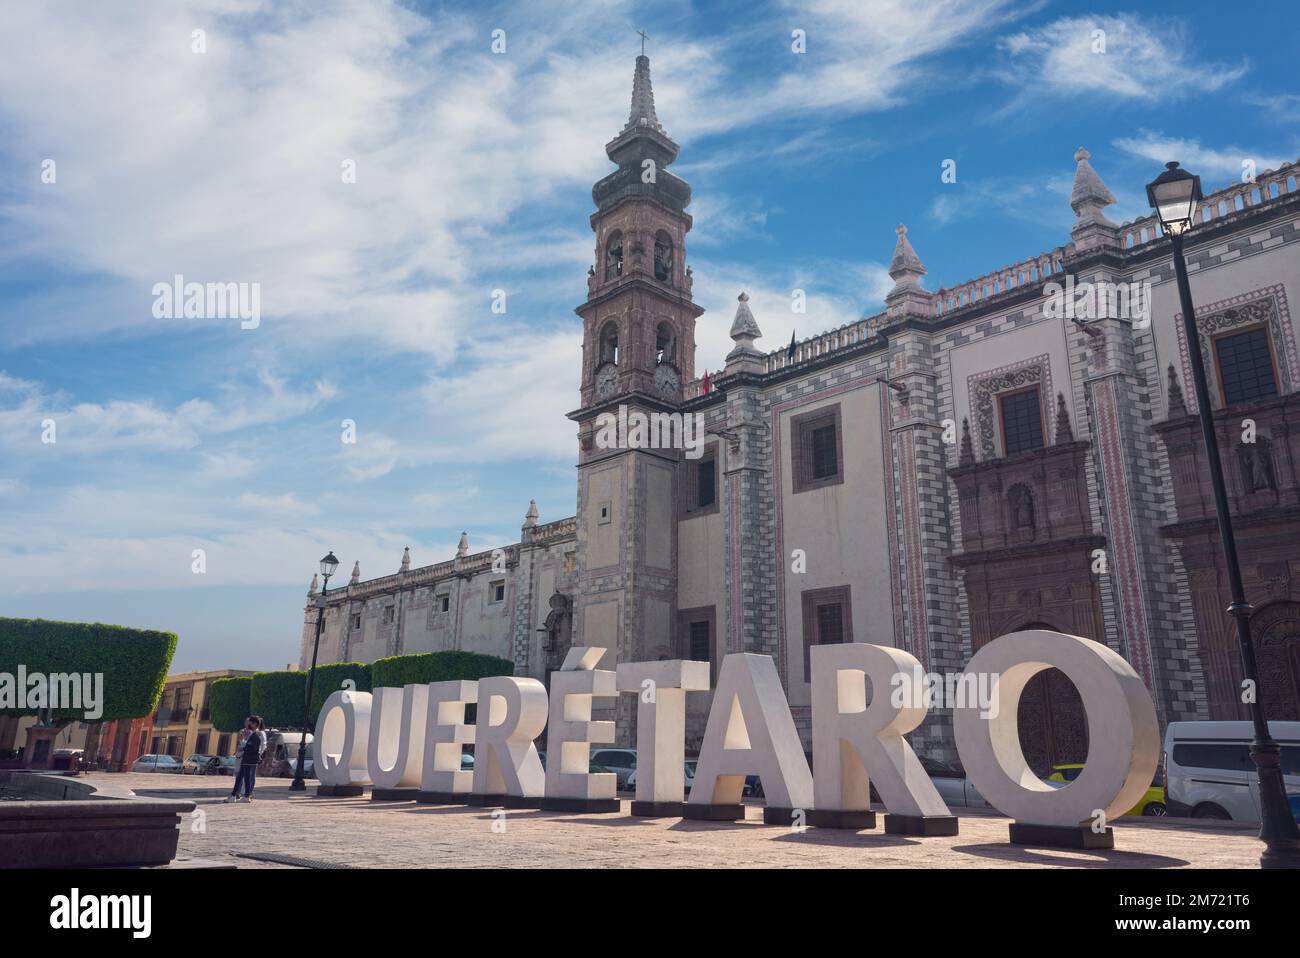 Queretaro, Queretaro, 11 29 22, temple de santa rosa de viterbo vue de face avec des lettres de Queretaro, architecture mexicaine, Église catholique Banque D'Images